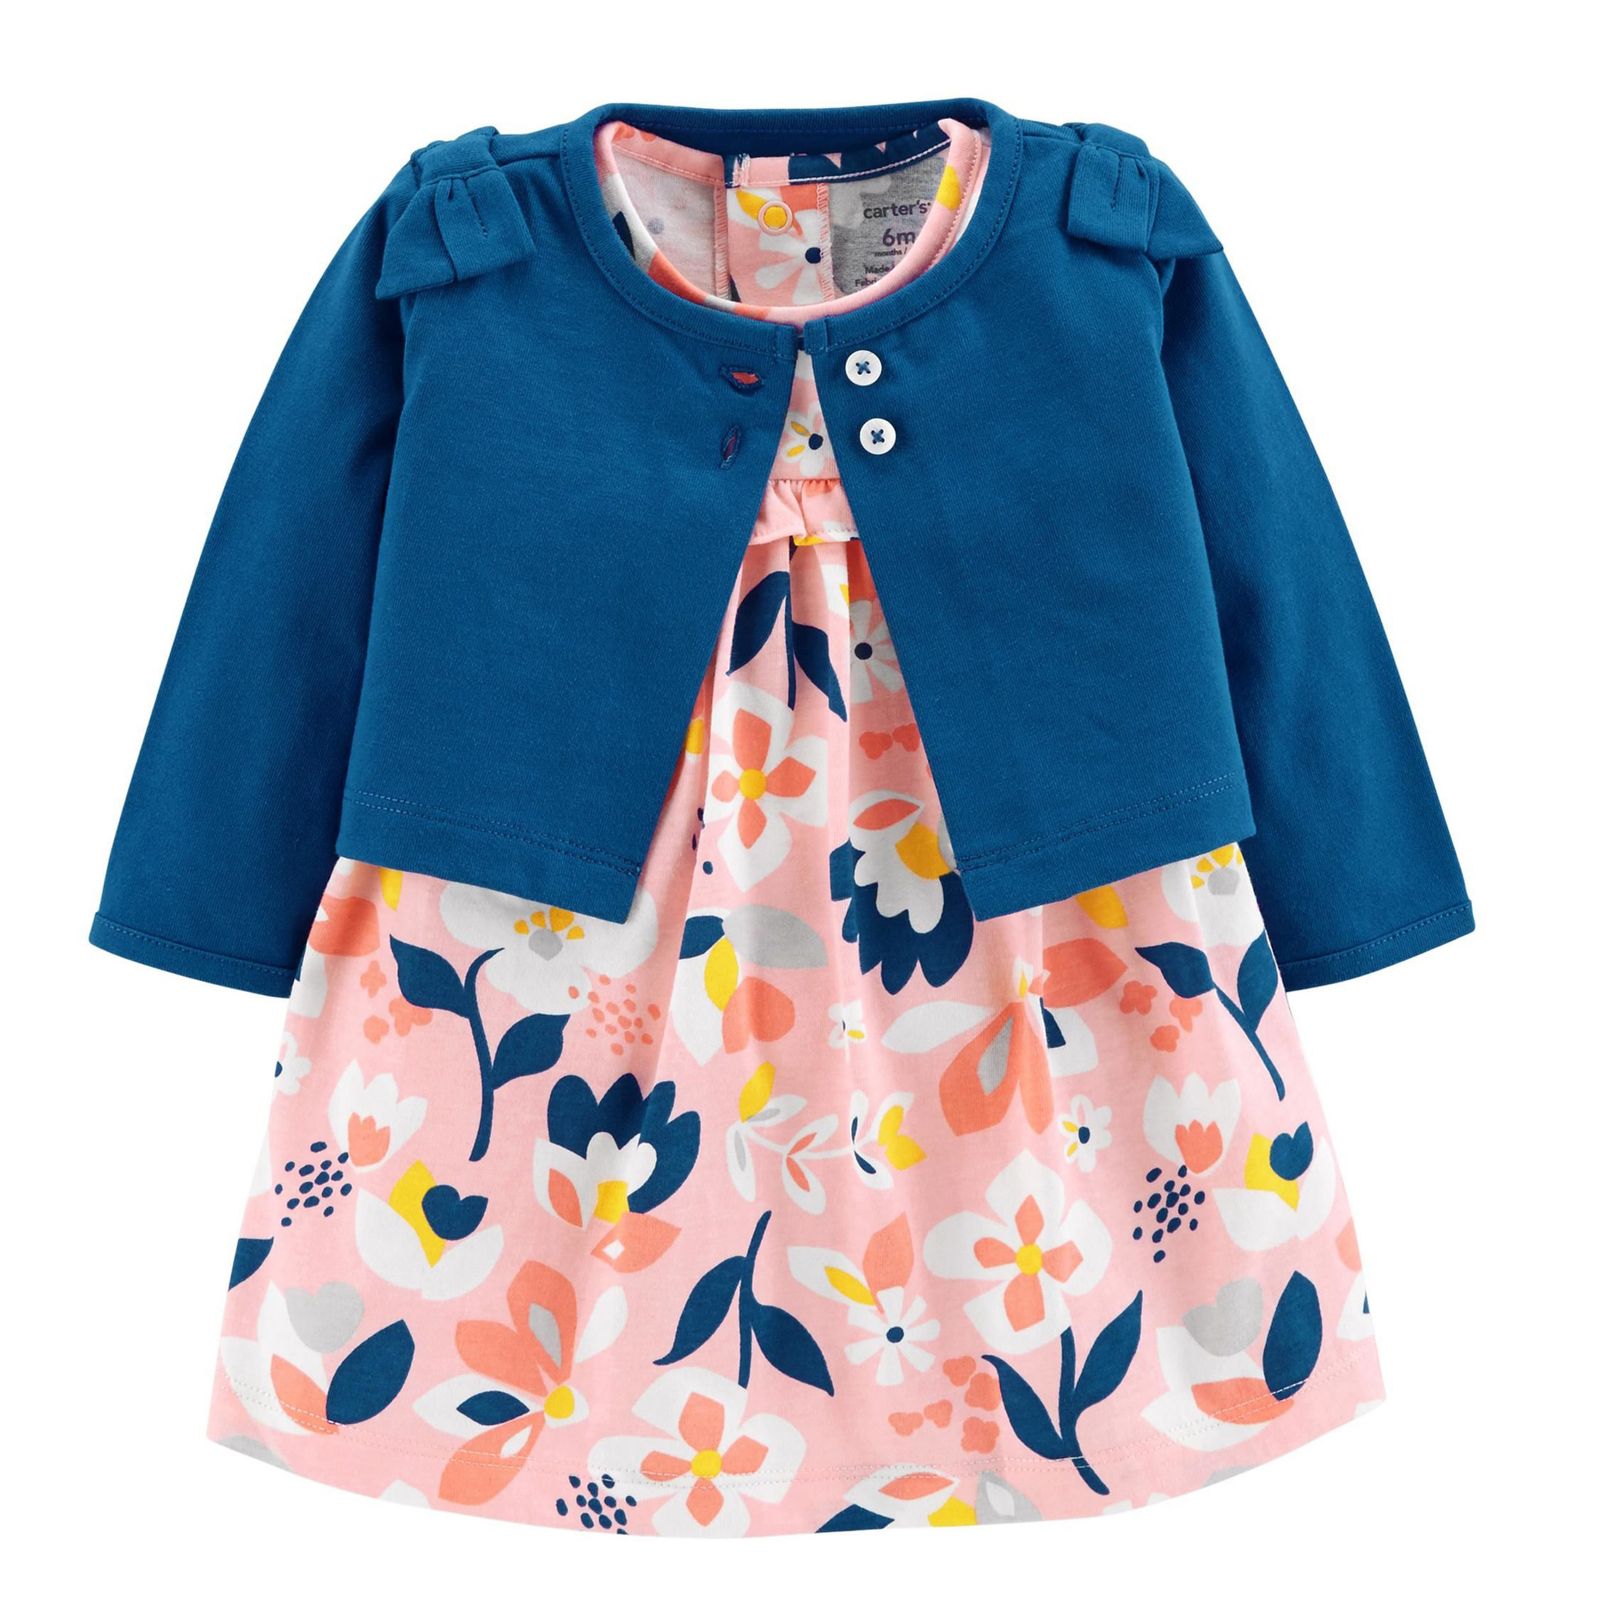 ست کت و پیراهن نوزادی دخترانه کارترز طرح Floral کد M615 -  - 1